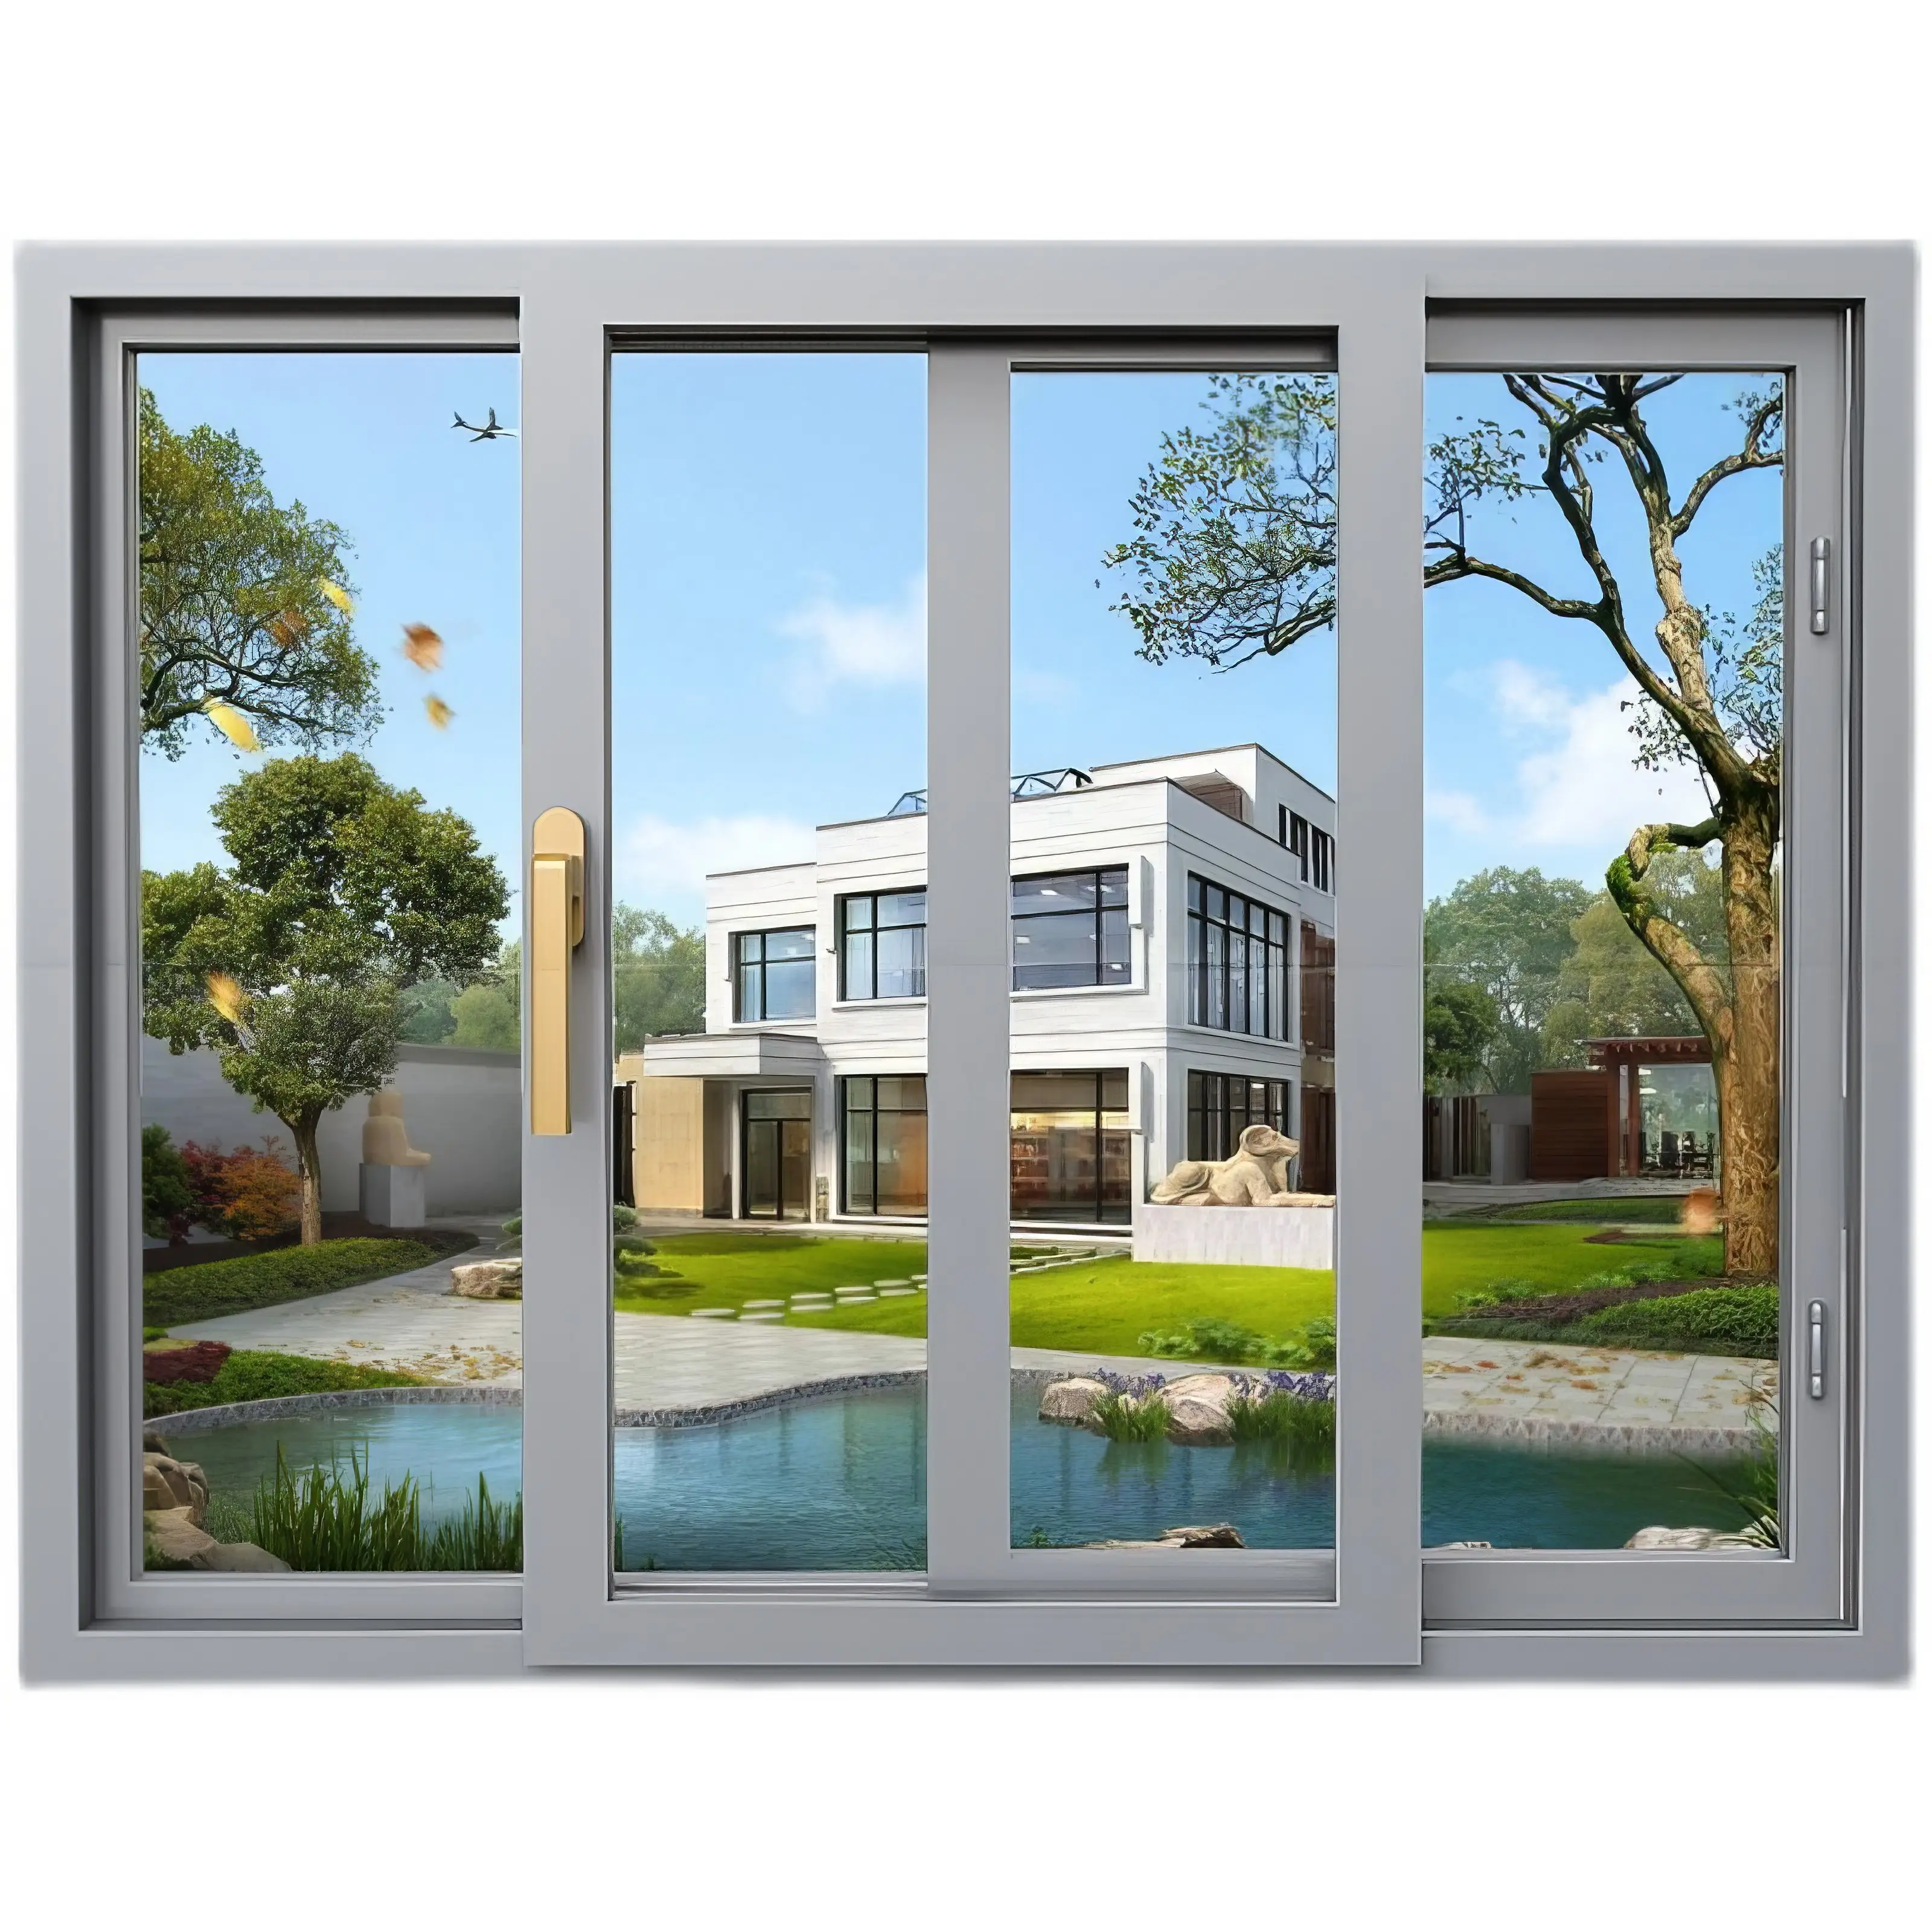 Aluminiumfenster rahmenloses faltfenster: Panoramafenster mit Glaslegierung Balkonvorhangfenster